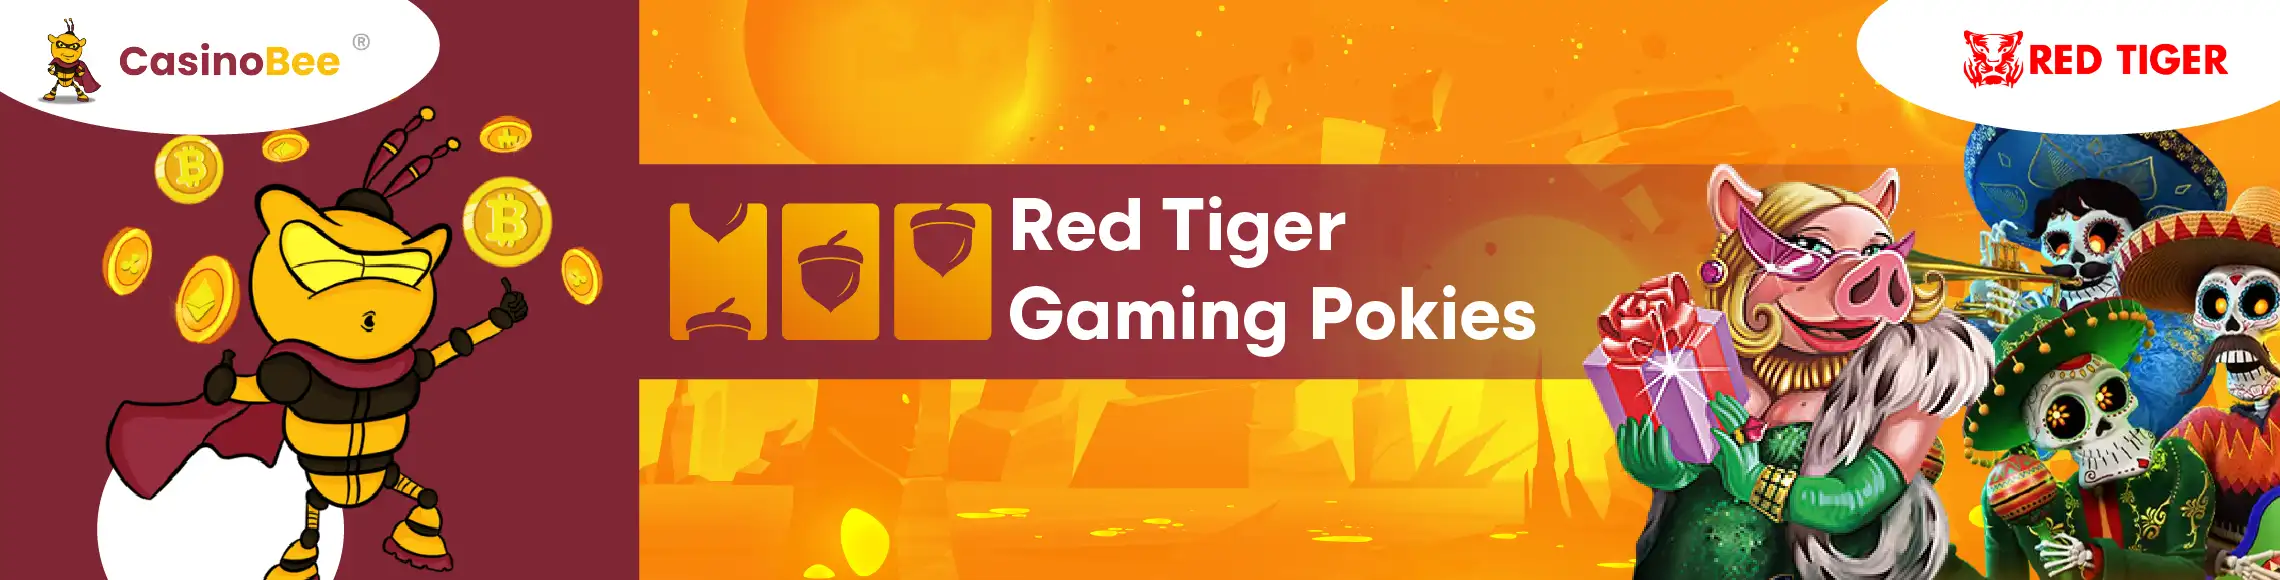 Red Tiger Gaming pokies